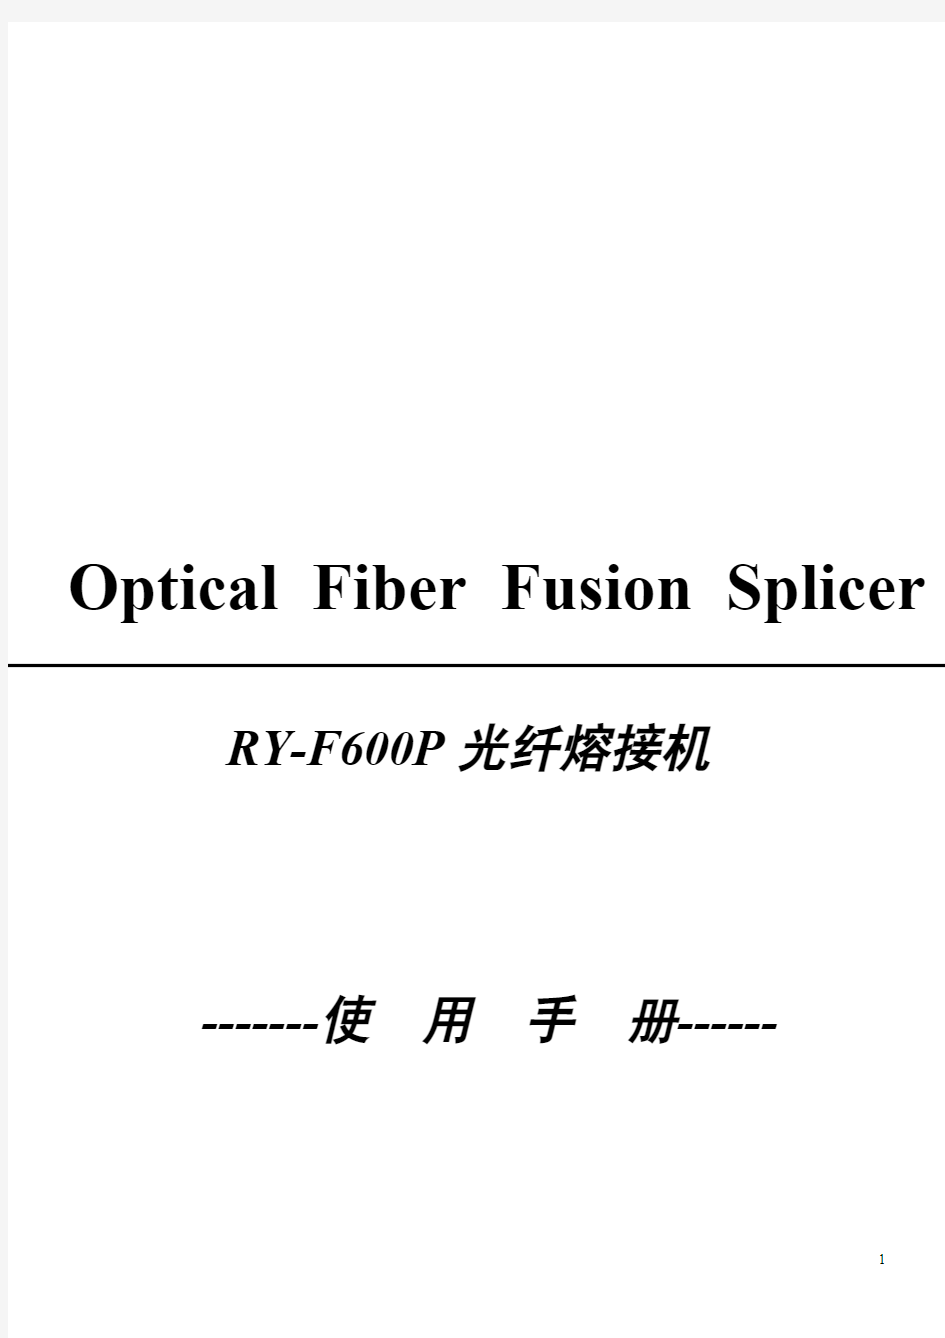 瑞研RY-F600P光纤熔接机说明书